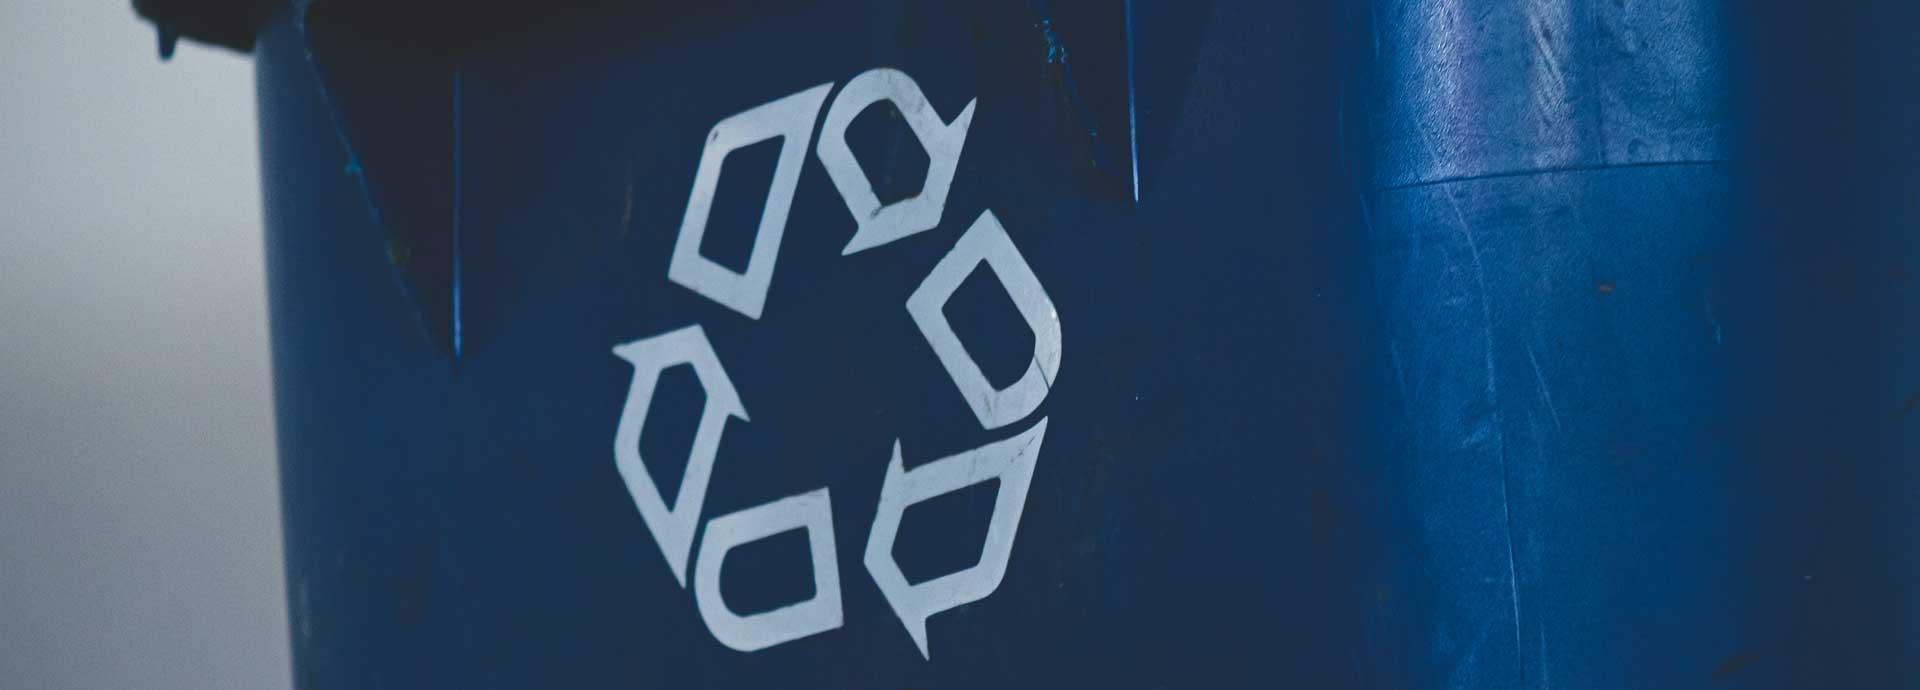 A recycle symbol on a blue trash bin